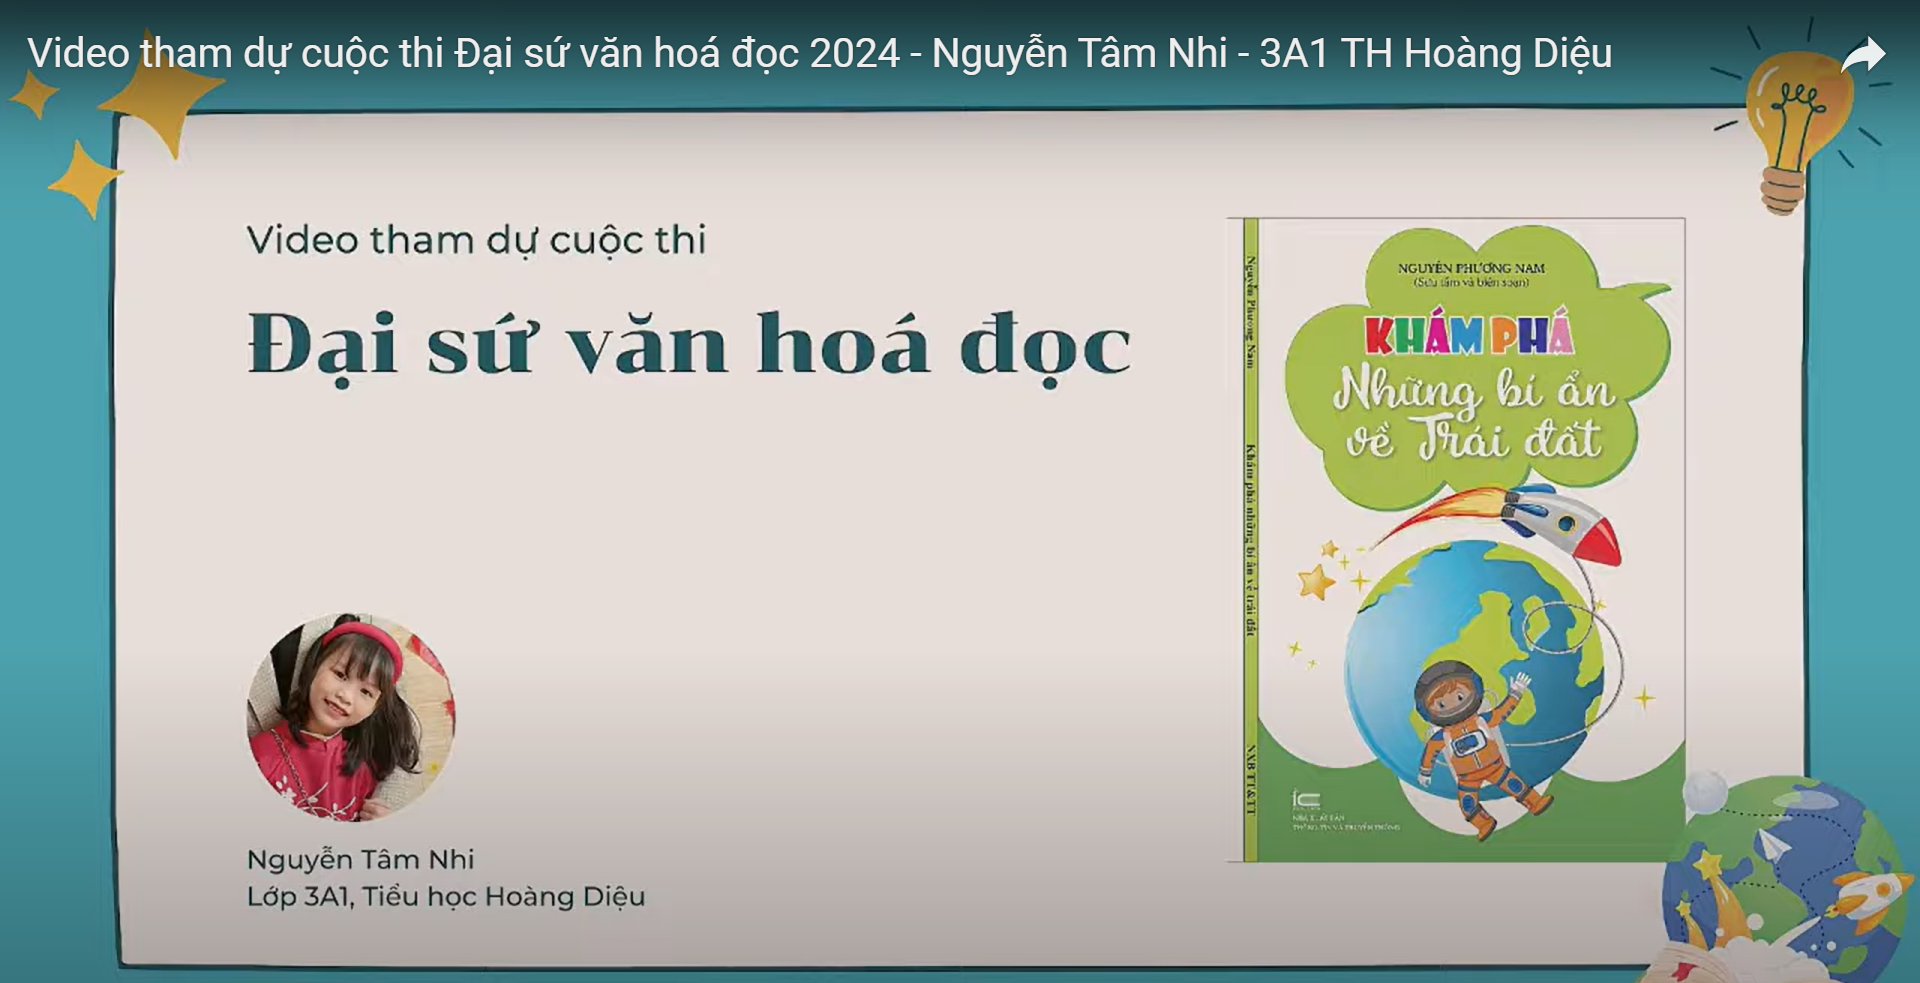 Bài dự thi "Đại sứ văn hóa đọc" - Bạn Nguyễn Tâm Nhi - Lớp 3A1 Trường TH Hoàng Diệu